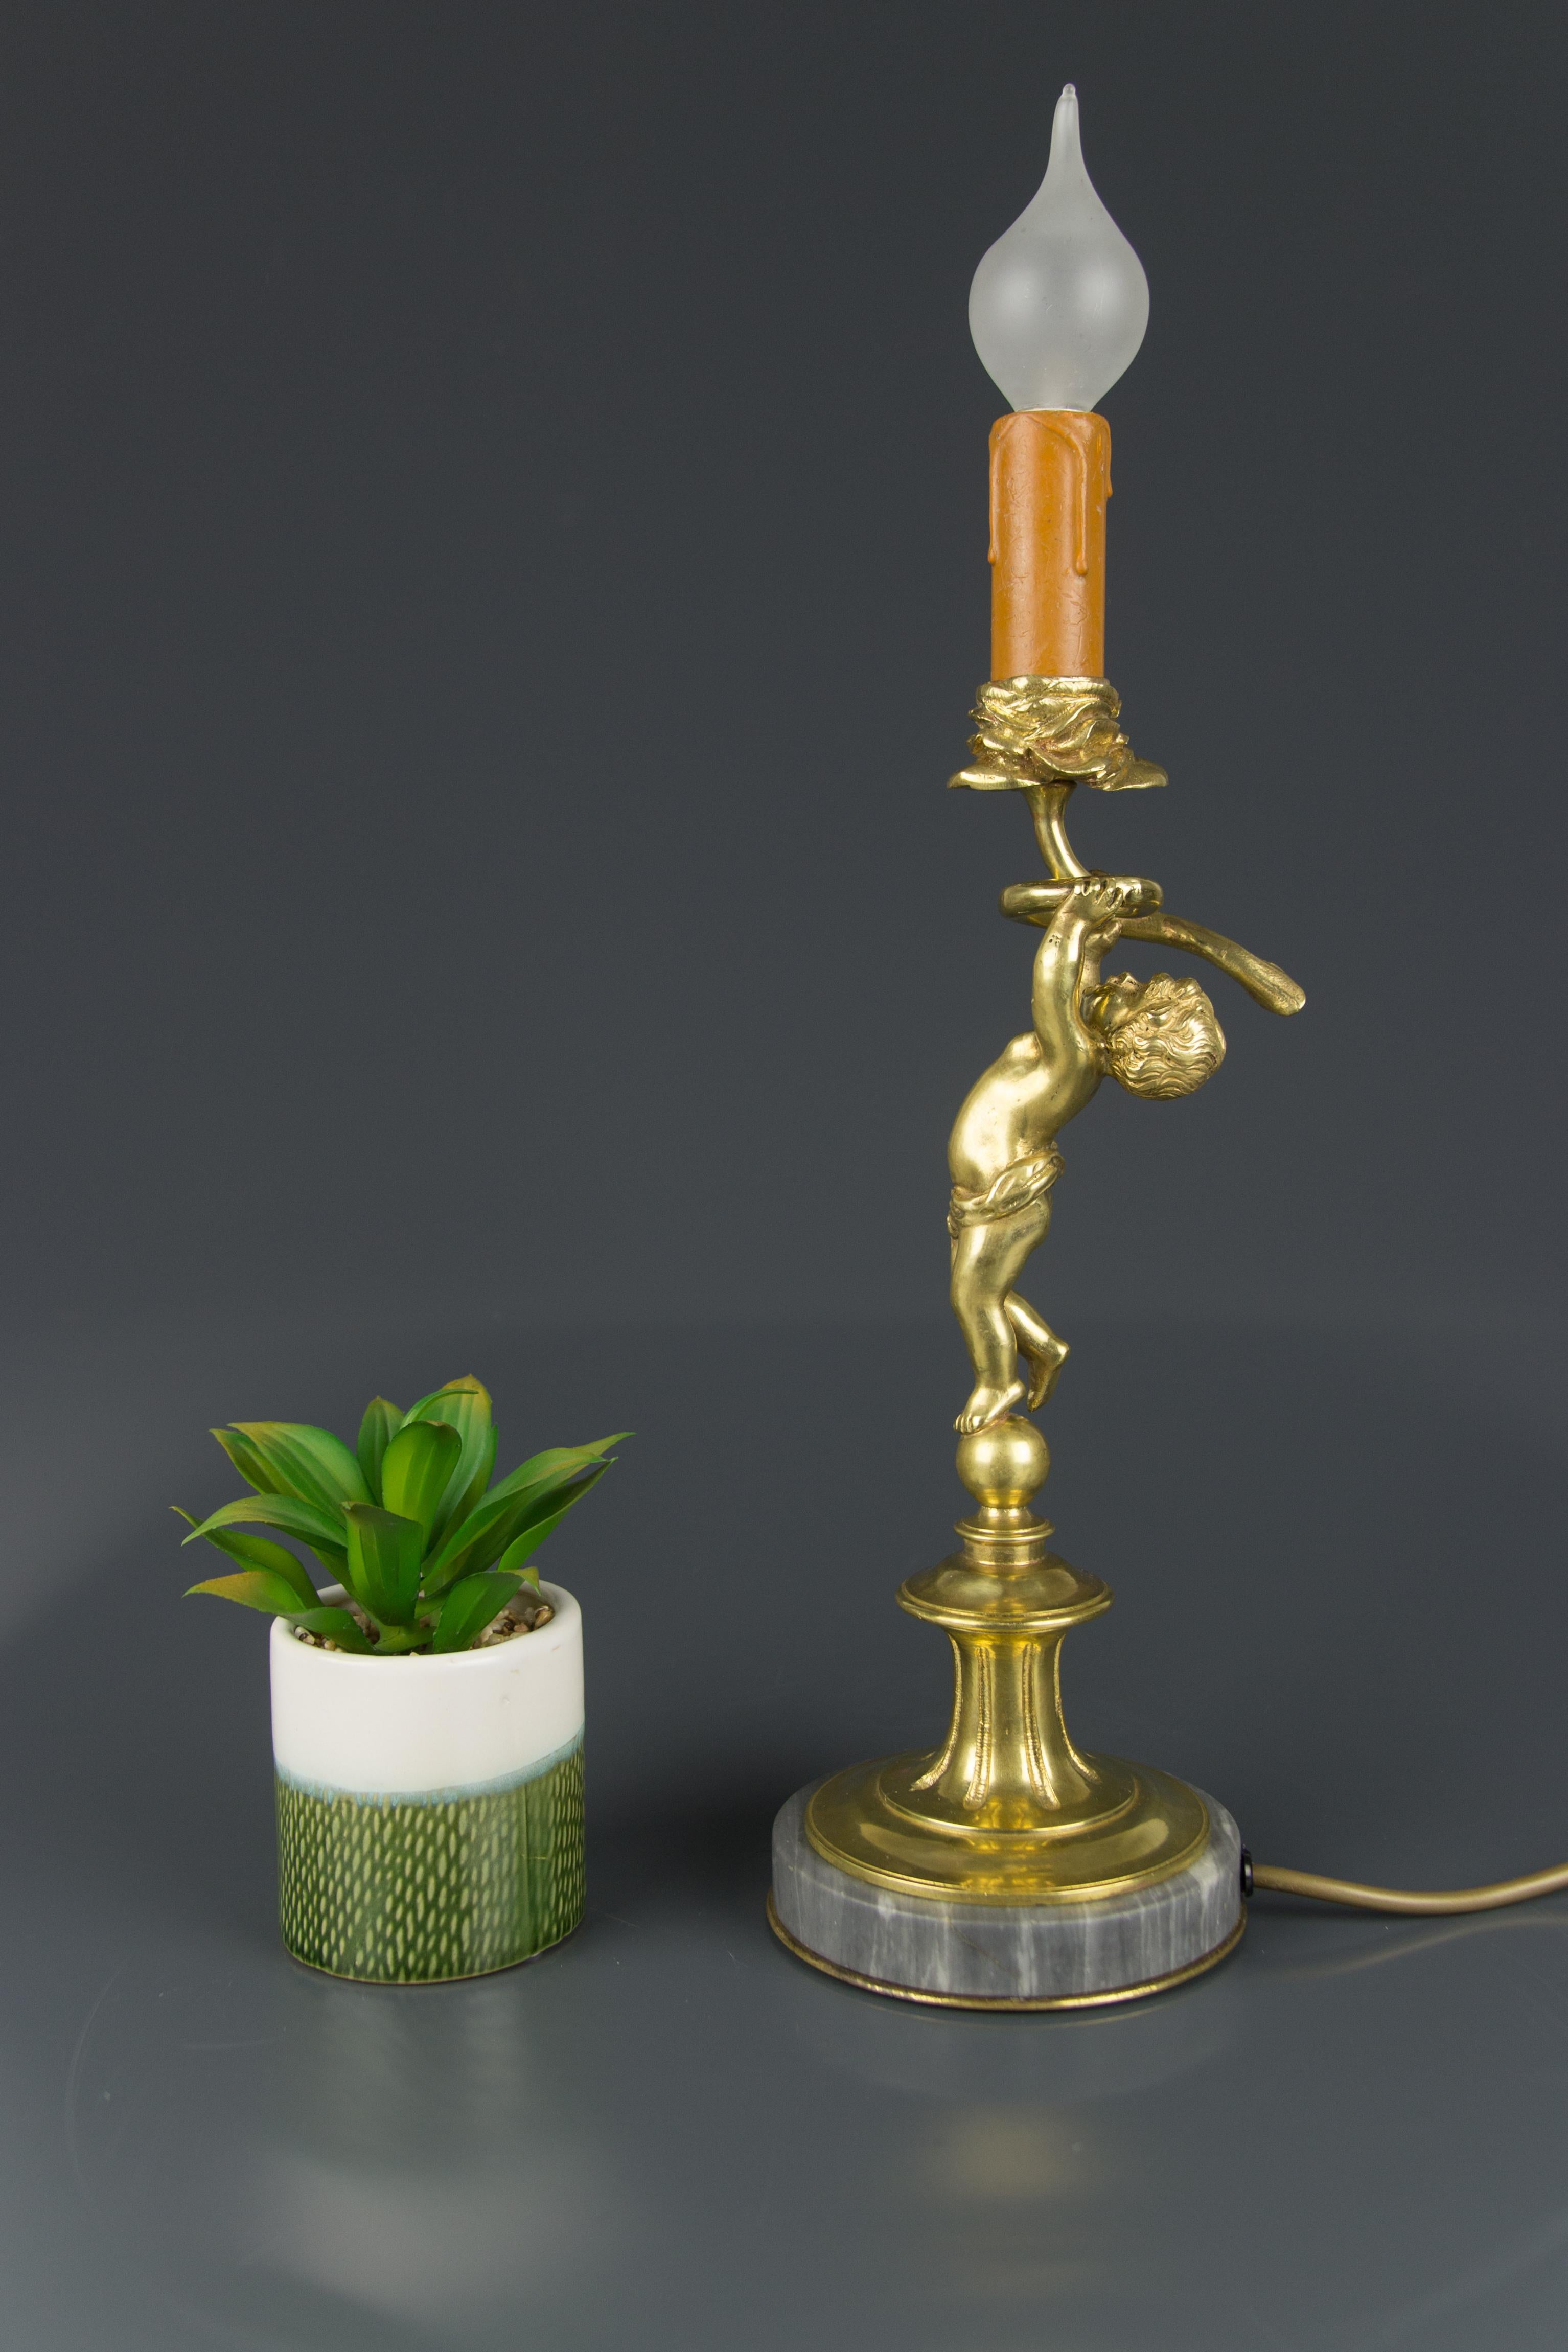 Die bezaubernde Bronze-Tischlampe zeigt die Bronzefigur eines Cherubs, der auf einem runden grauen Marmorsockel steht und eine Blumenkerze hält.
Eine Fassung für eine Glühbirne der Größe E14.
Die Lampe kann auch in den USA sicher verwendet werden,